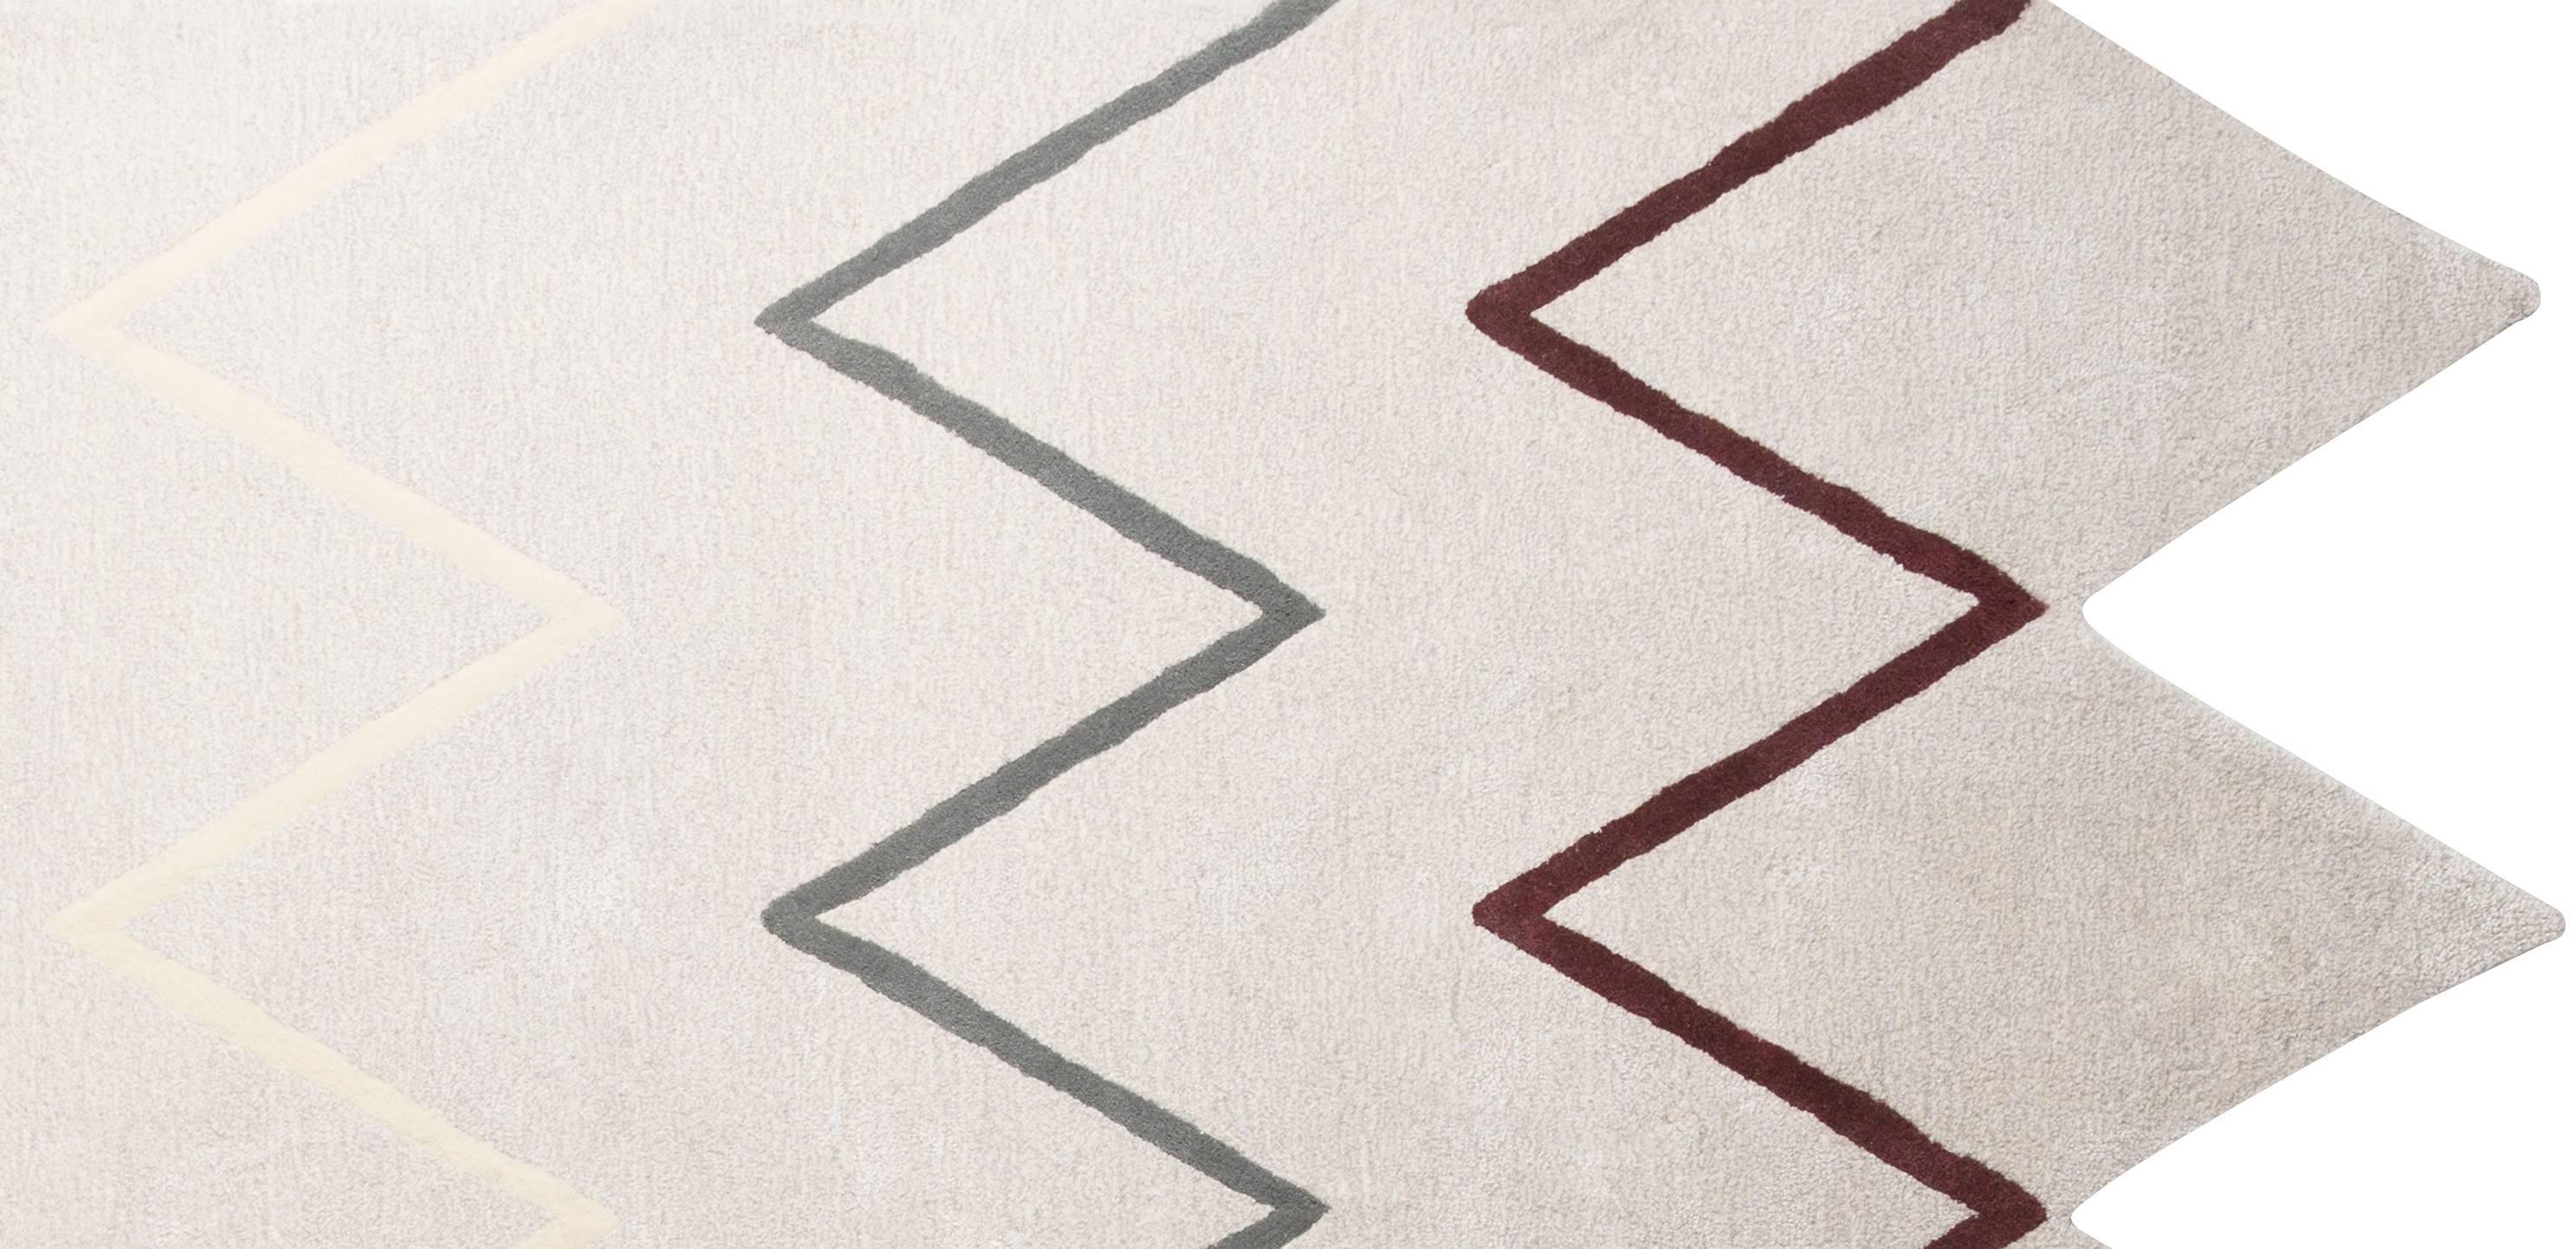 Le tapis Otto présente un bord en zigzag amusant et un imprimé assorti, dans une palette de couleurs douces et neutres. Pas un autre neutre pour aider à mettre une pièce à la terre. Des tapis qui font la différence. Tapis touffeté à la main, composé